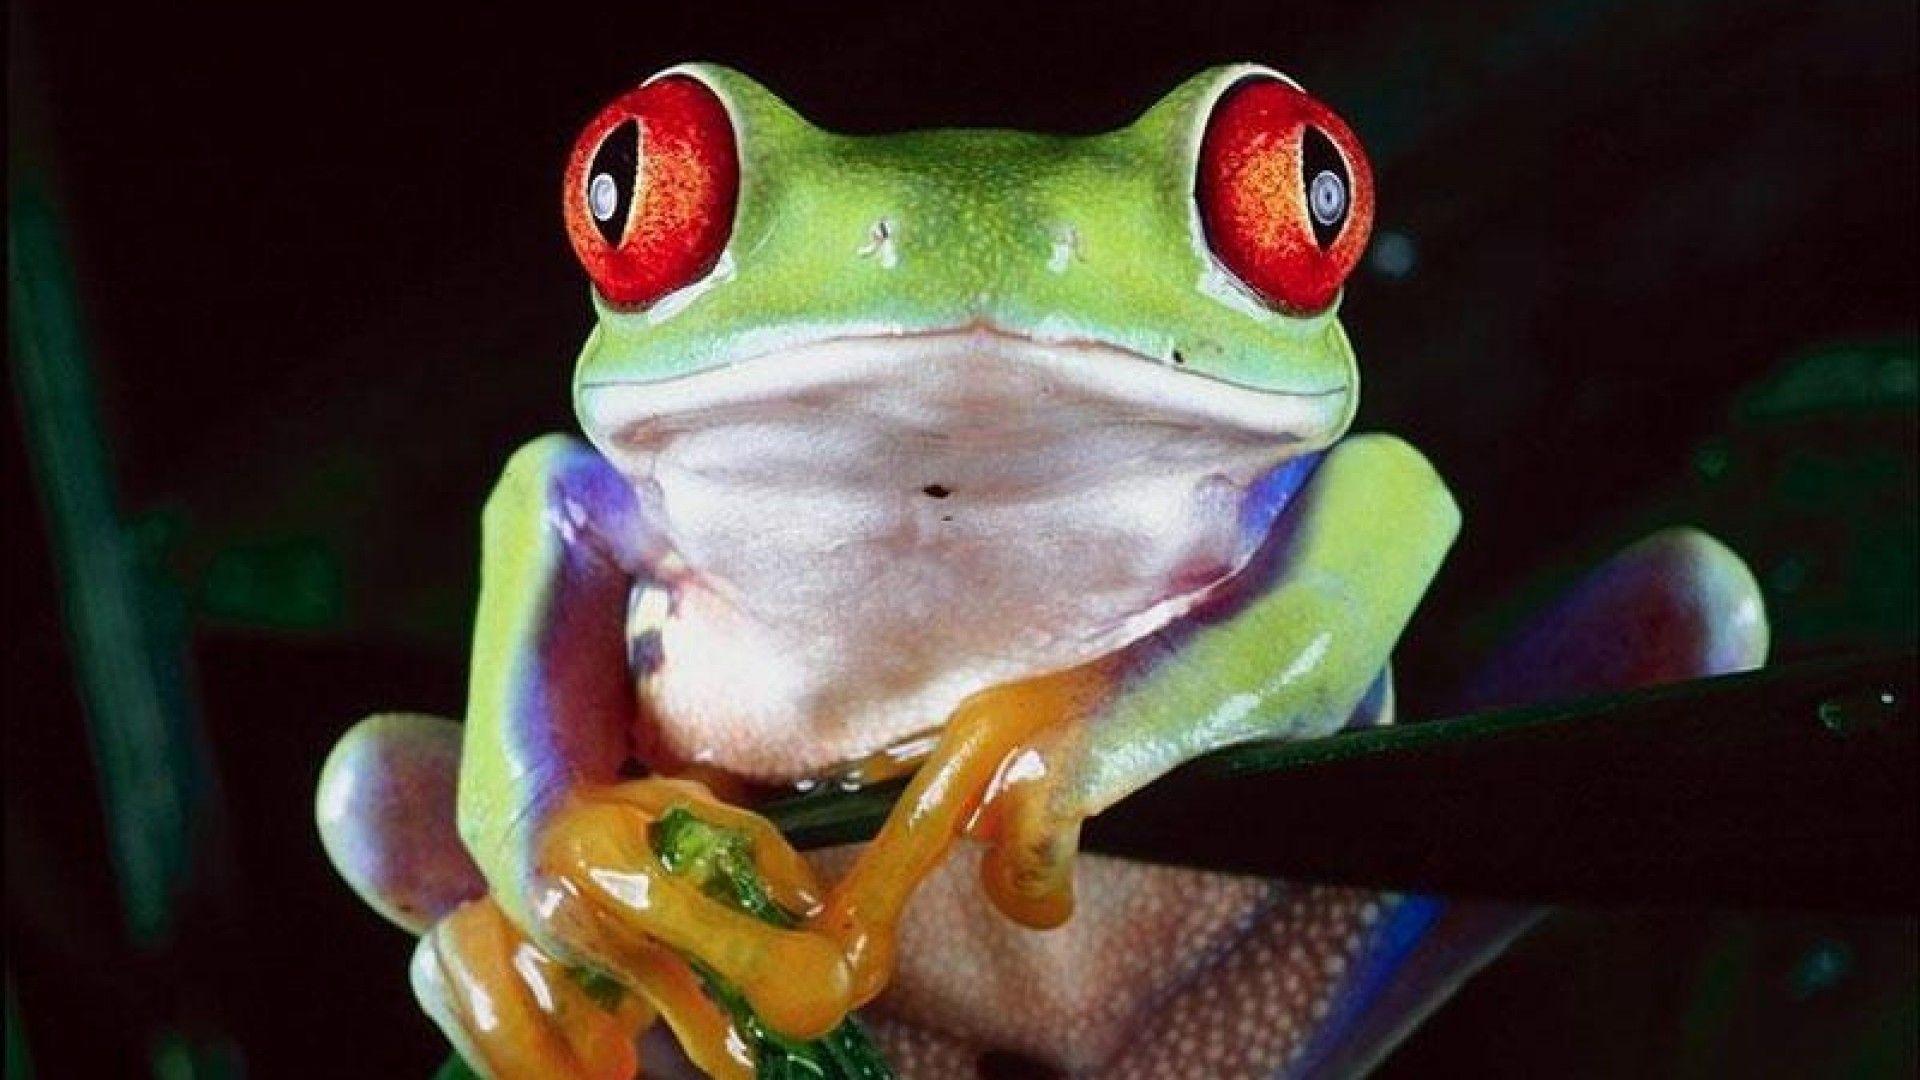 Frog Background for Desktop, wallpaper, Frog Background